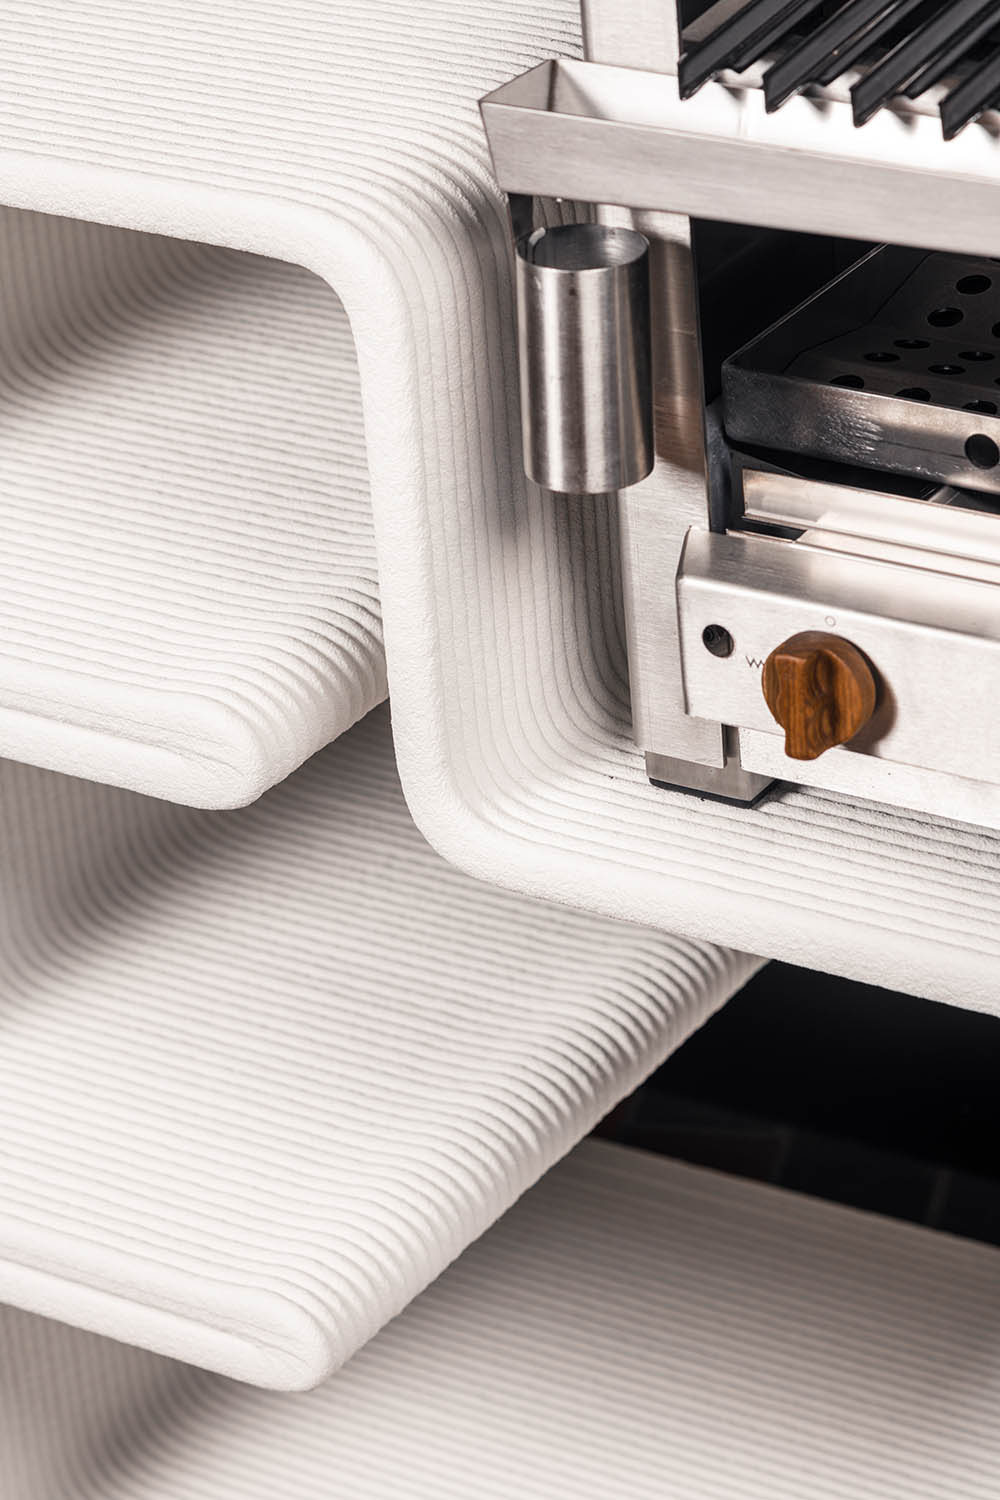 Aussenküche Manguera - die weltweit erste 3D gedruckte Aussenküche